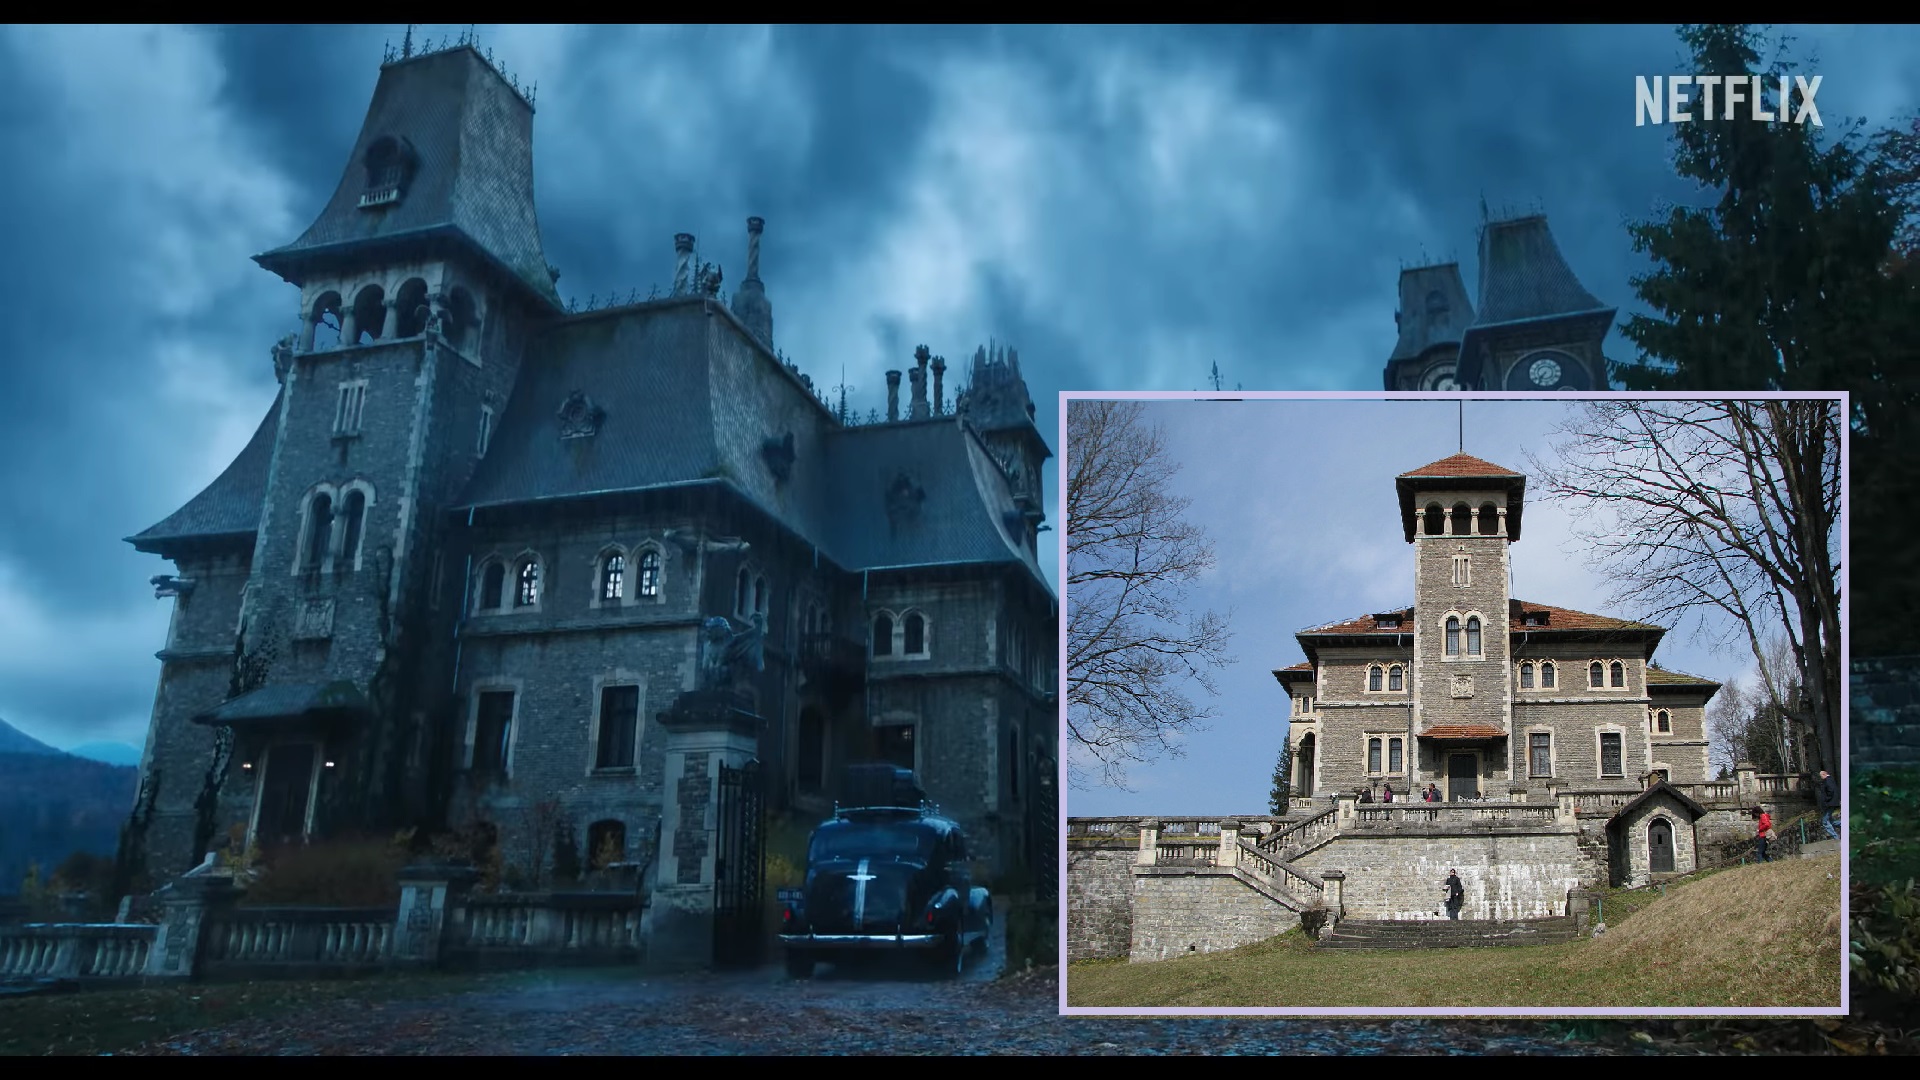 Nevermore Academy este reală.  Serialul „Miercuri” a fost filmat într-un castel roman  Portal istoric Histmag.org